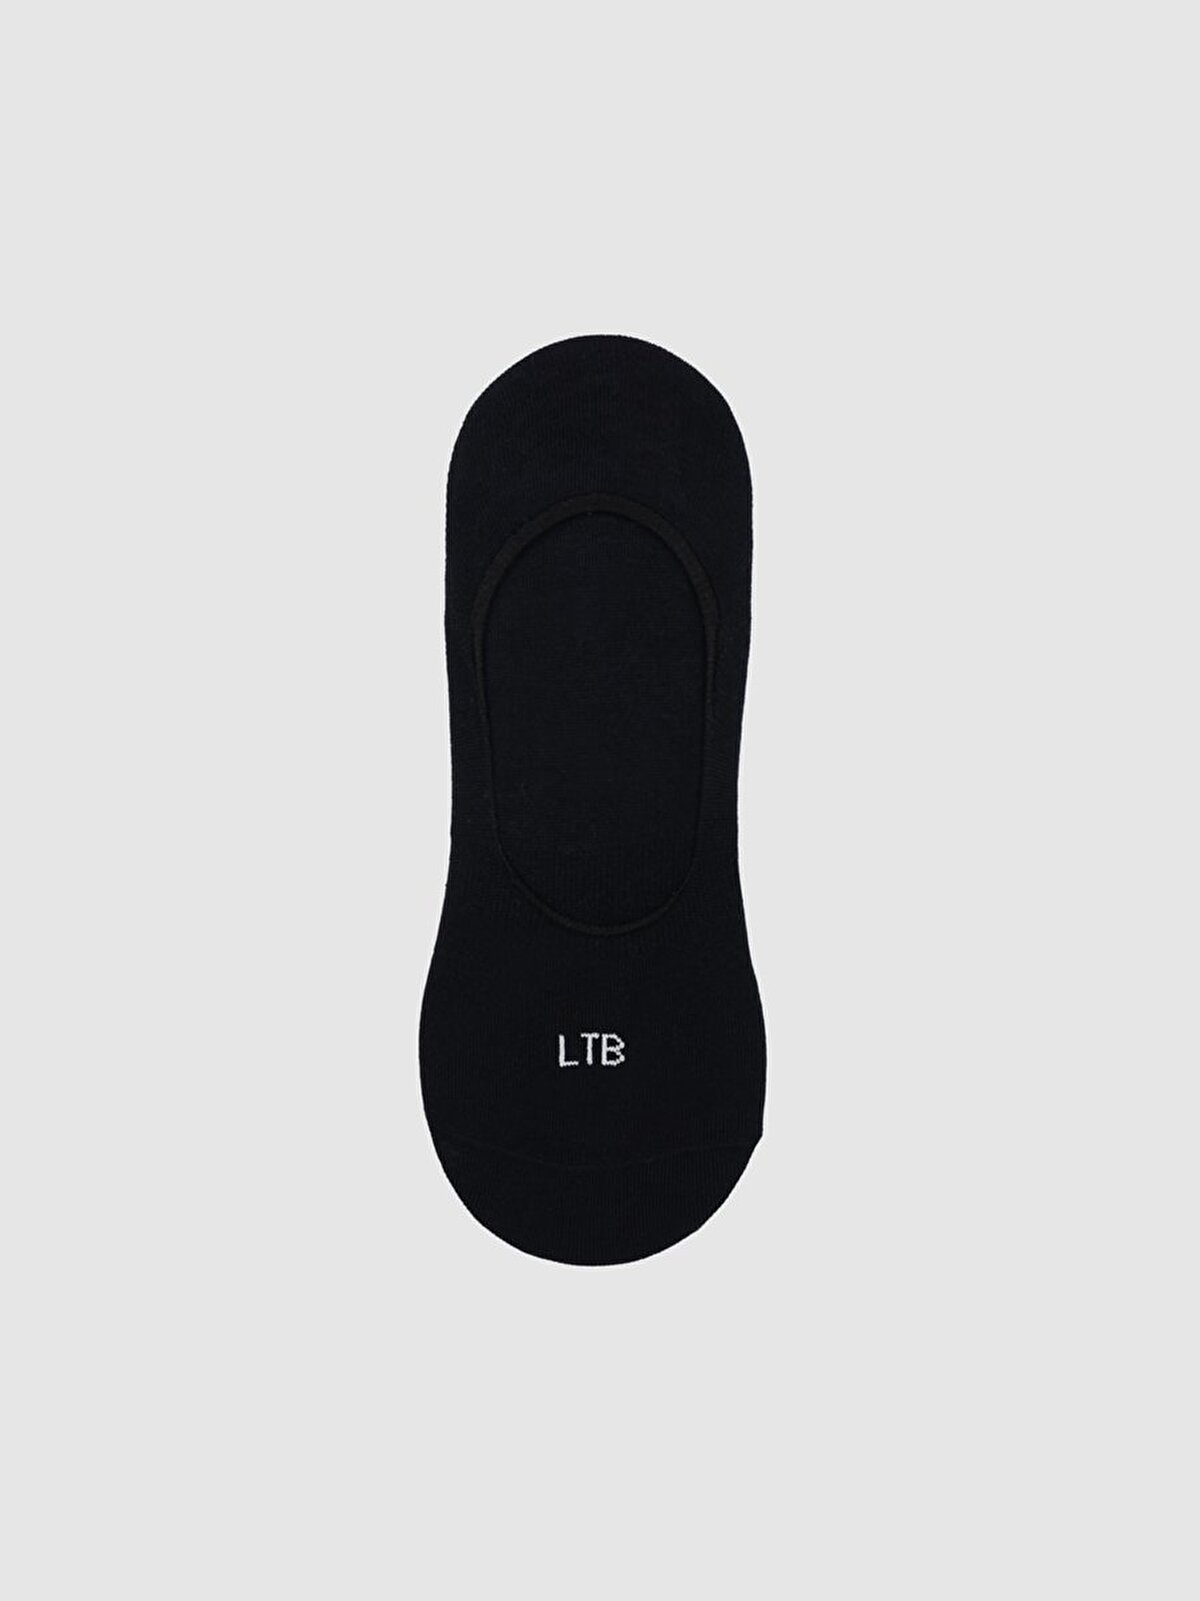 LTB Babet Siyah Çorap. 1